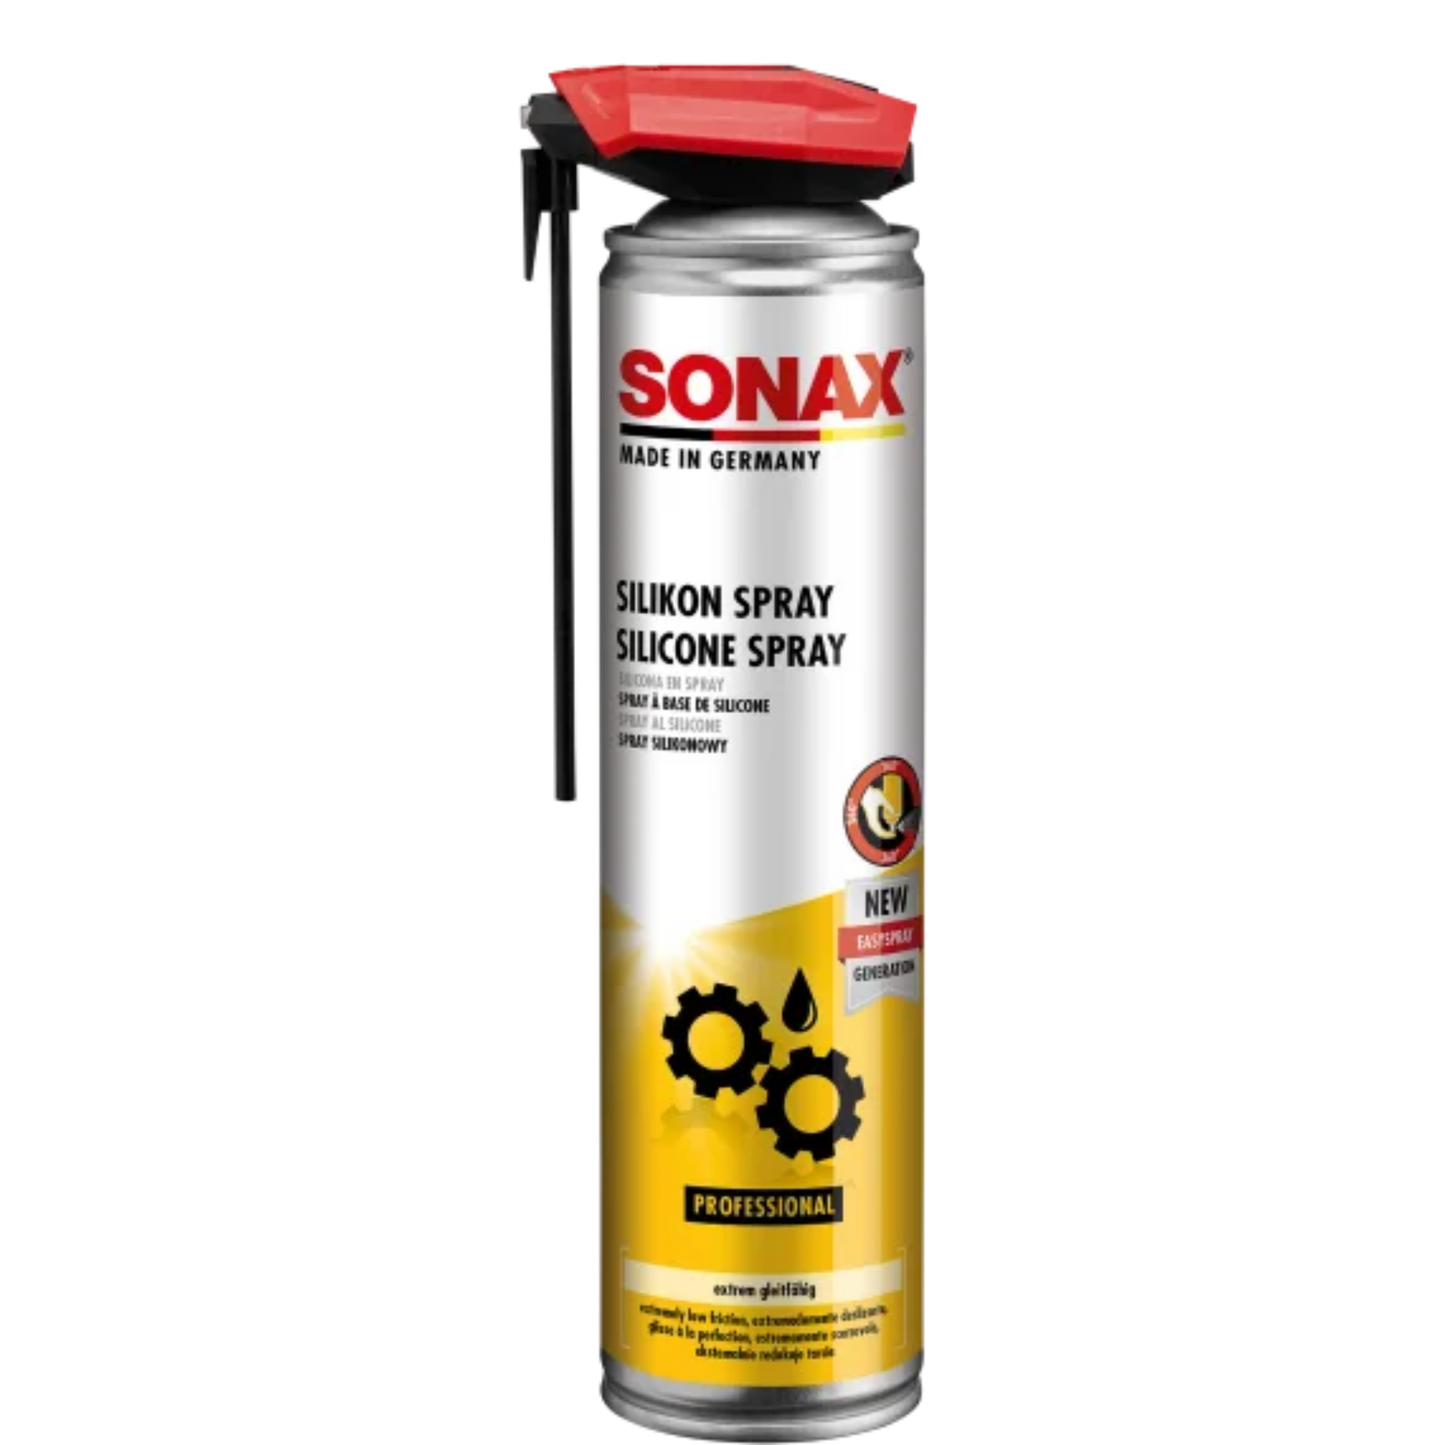 SONAX Silikonspray mit EasySpray - 400ml